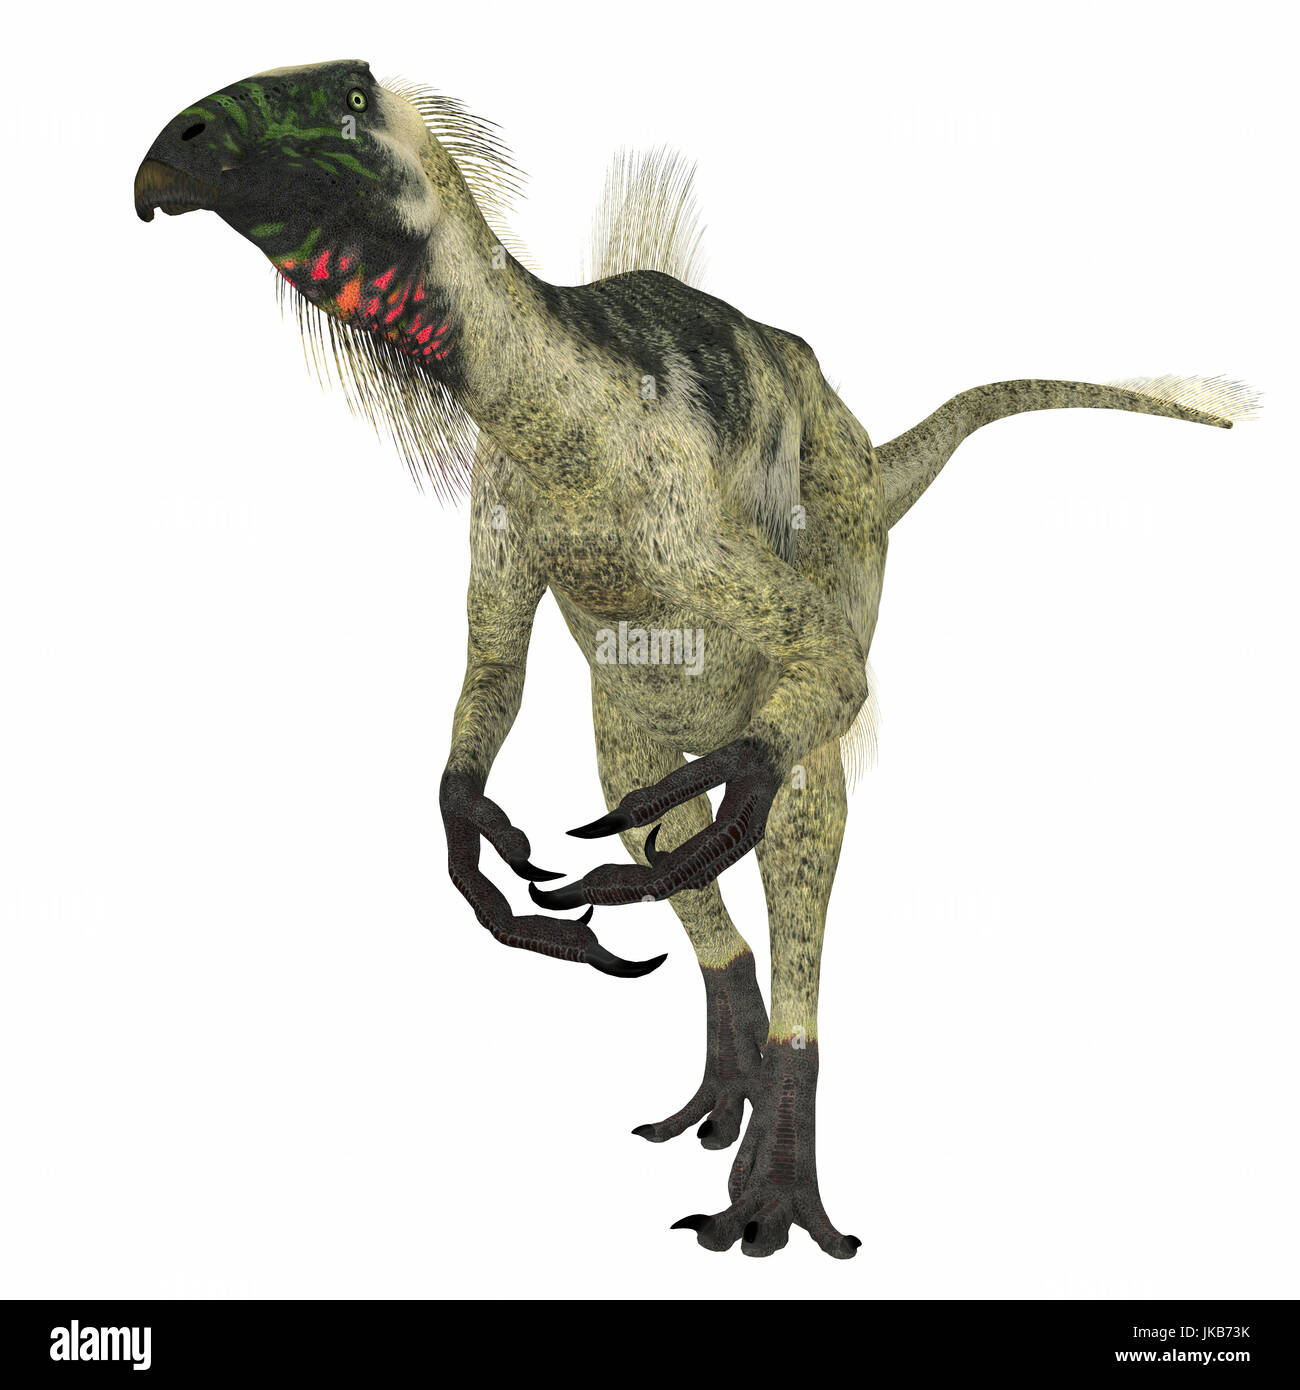 Beipiaosaurus war ein Pflanzenfresser theropode Dinosaurier, der in China in der Kreidezeit lebte. Stockfoto